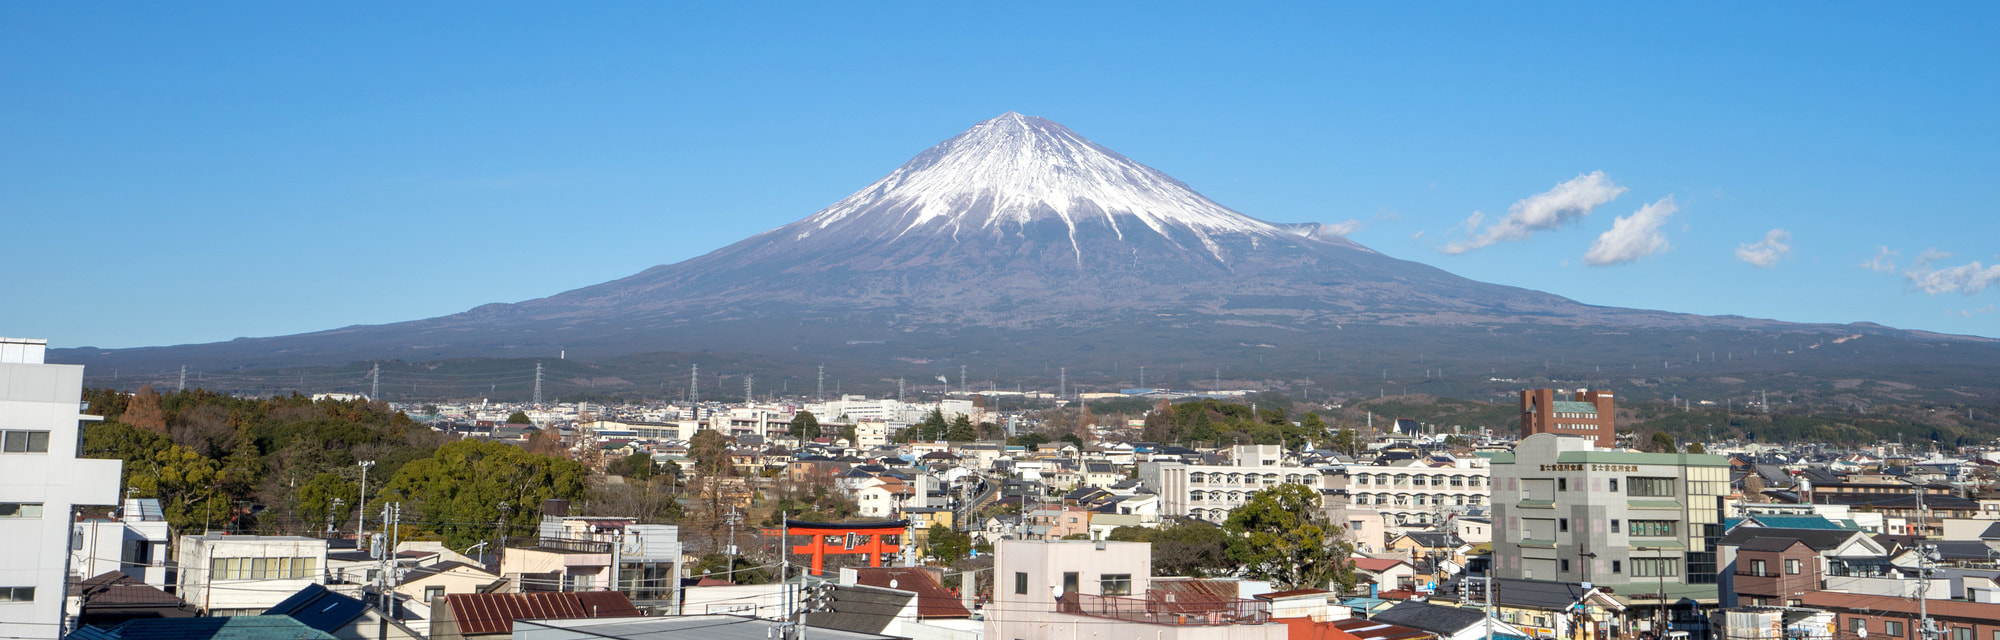 富士山世界遺産センターから見る富士宮市と富士山